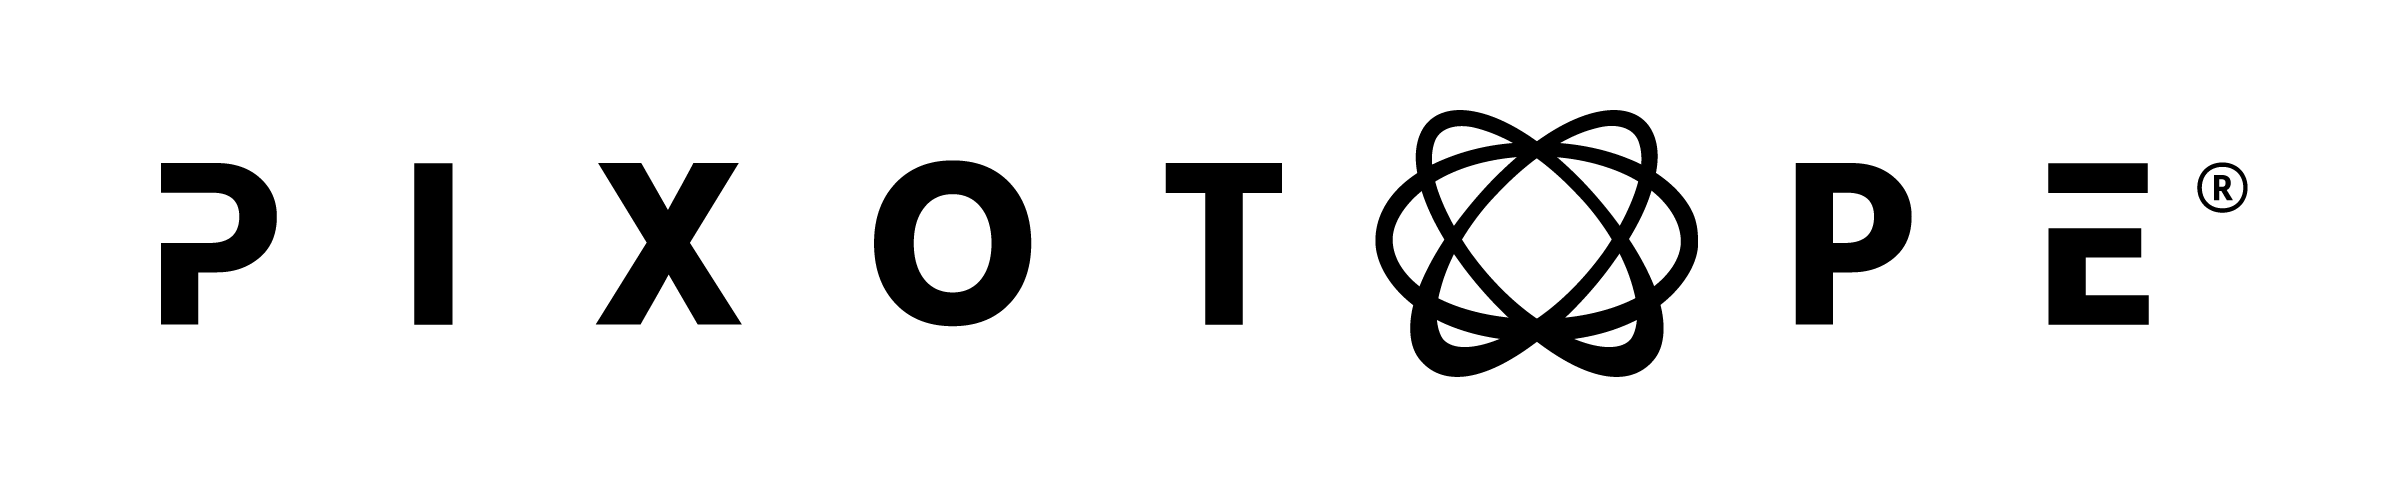 logos/Pixotope-Logo.png 